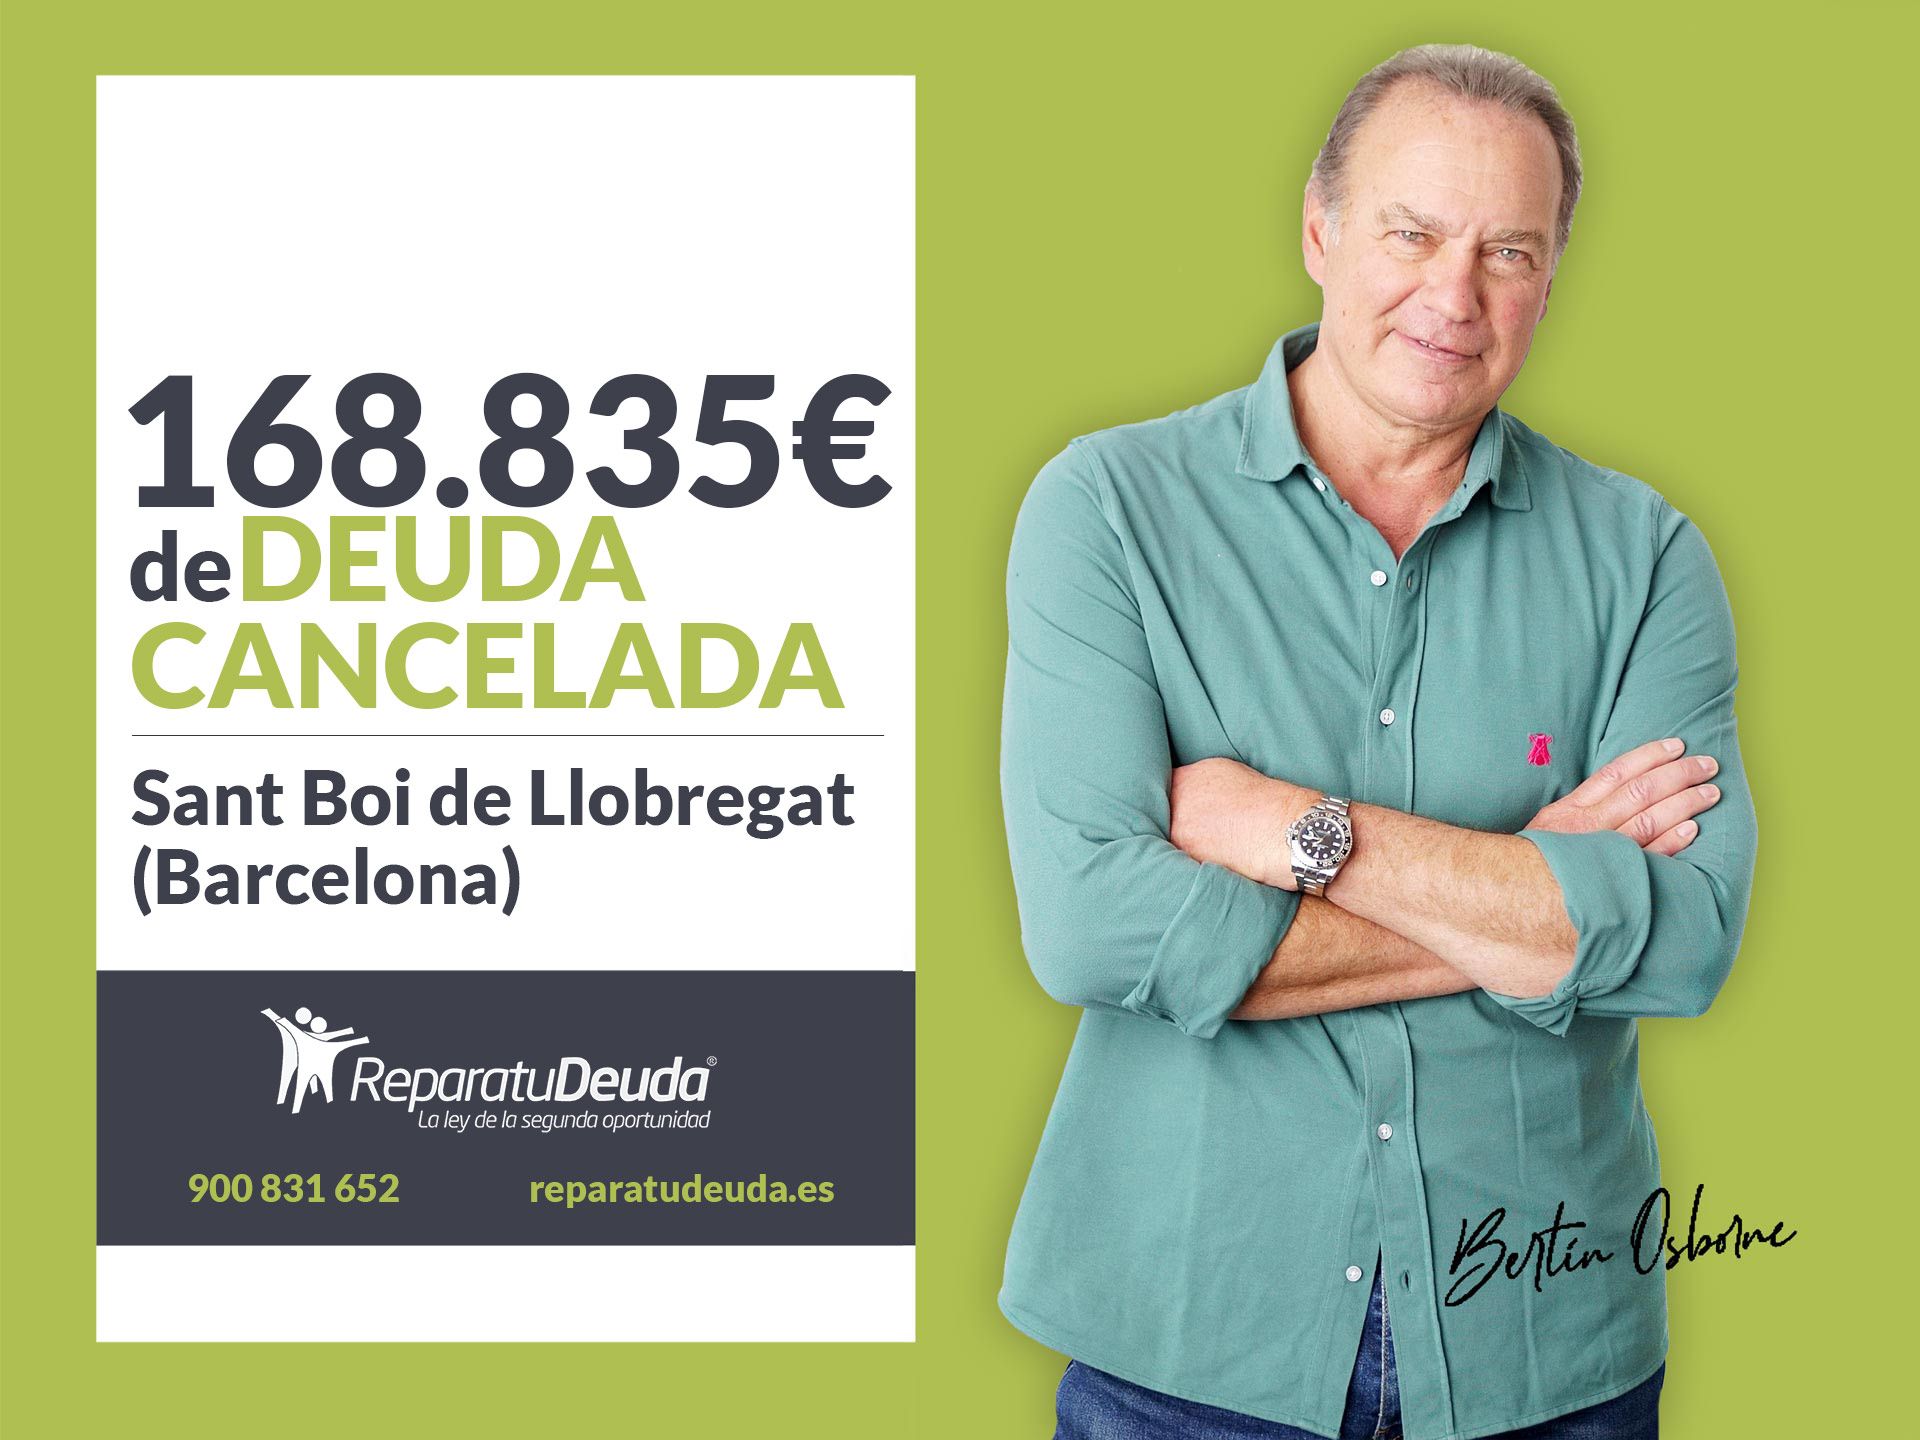 Repara tu Deuda cancela 168.835? en Sant Boi de Llobregat (Barcelona) con la Ley de Segunda Oportunidad